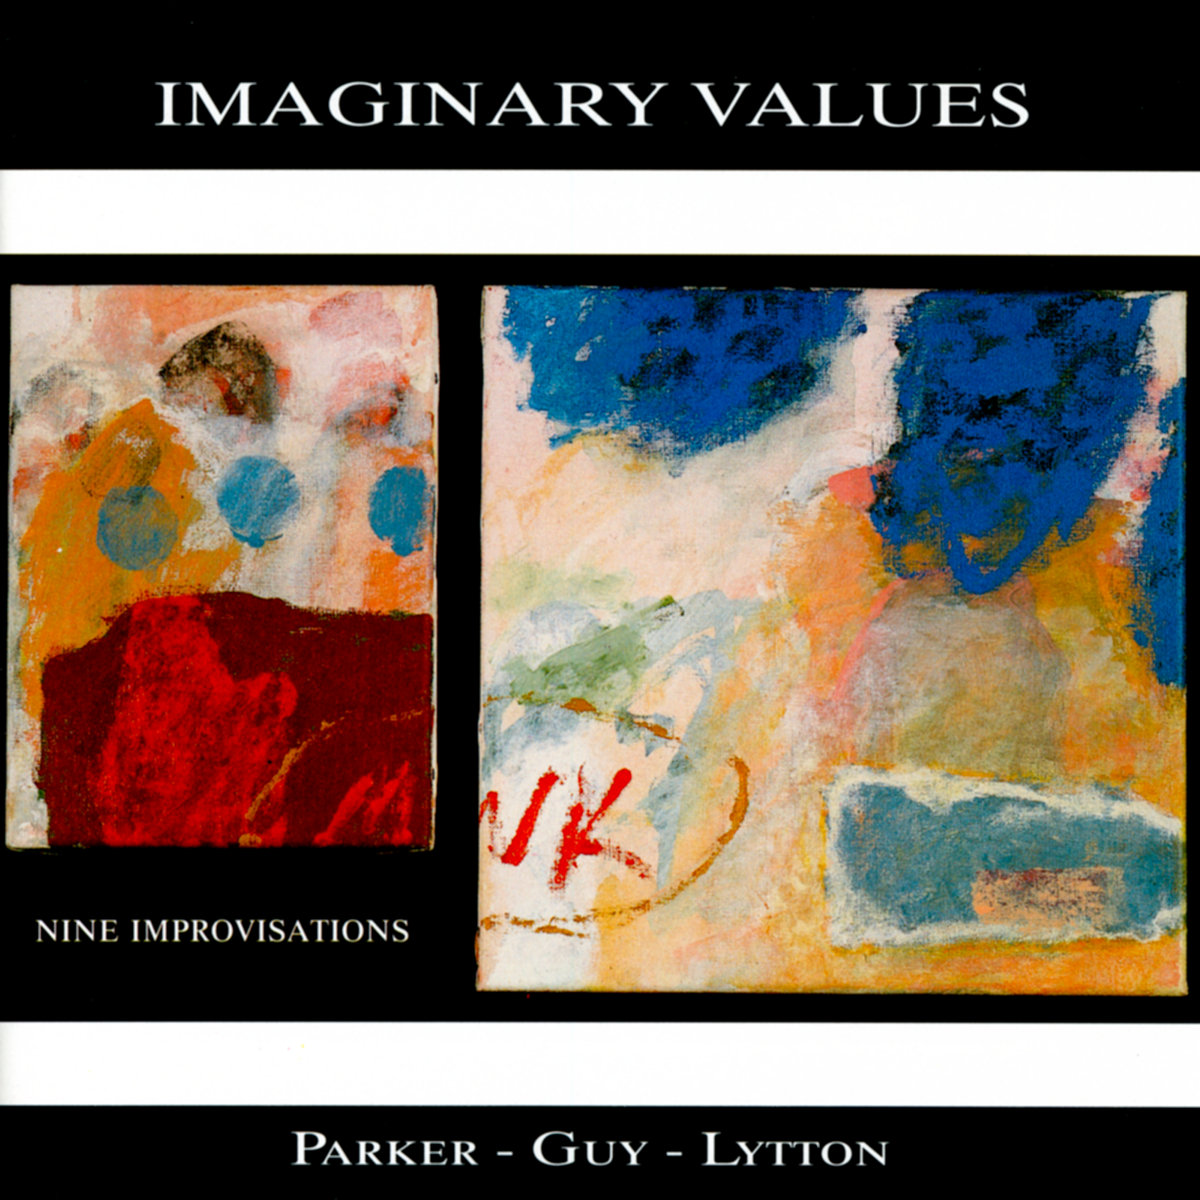 Imaginary Values